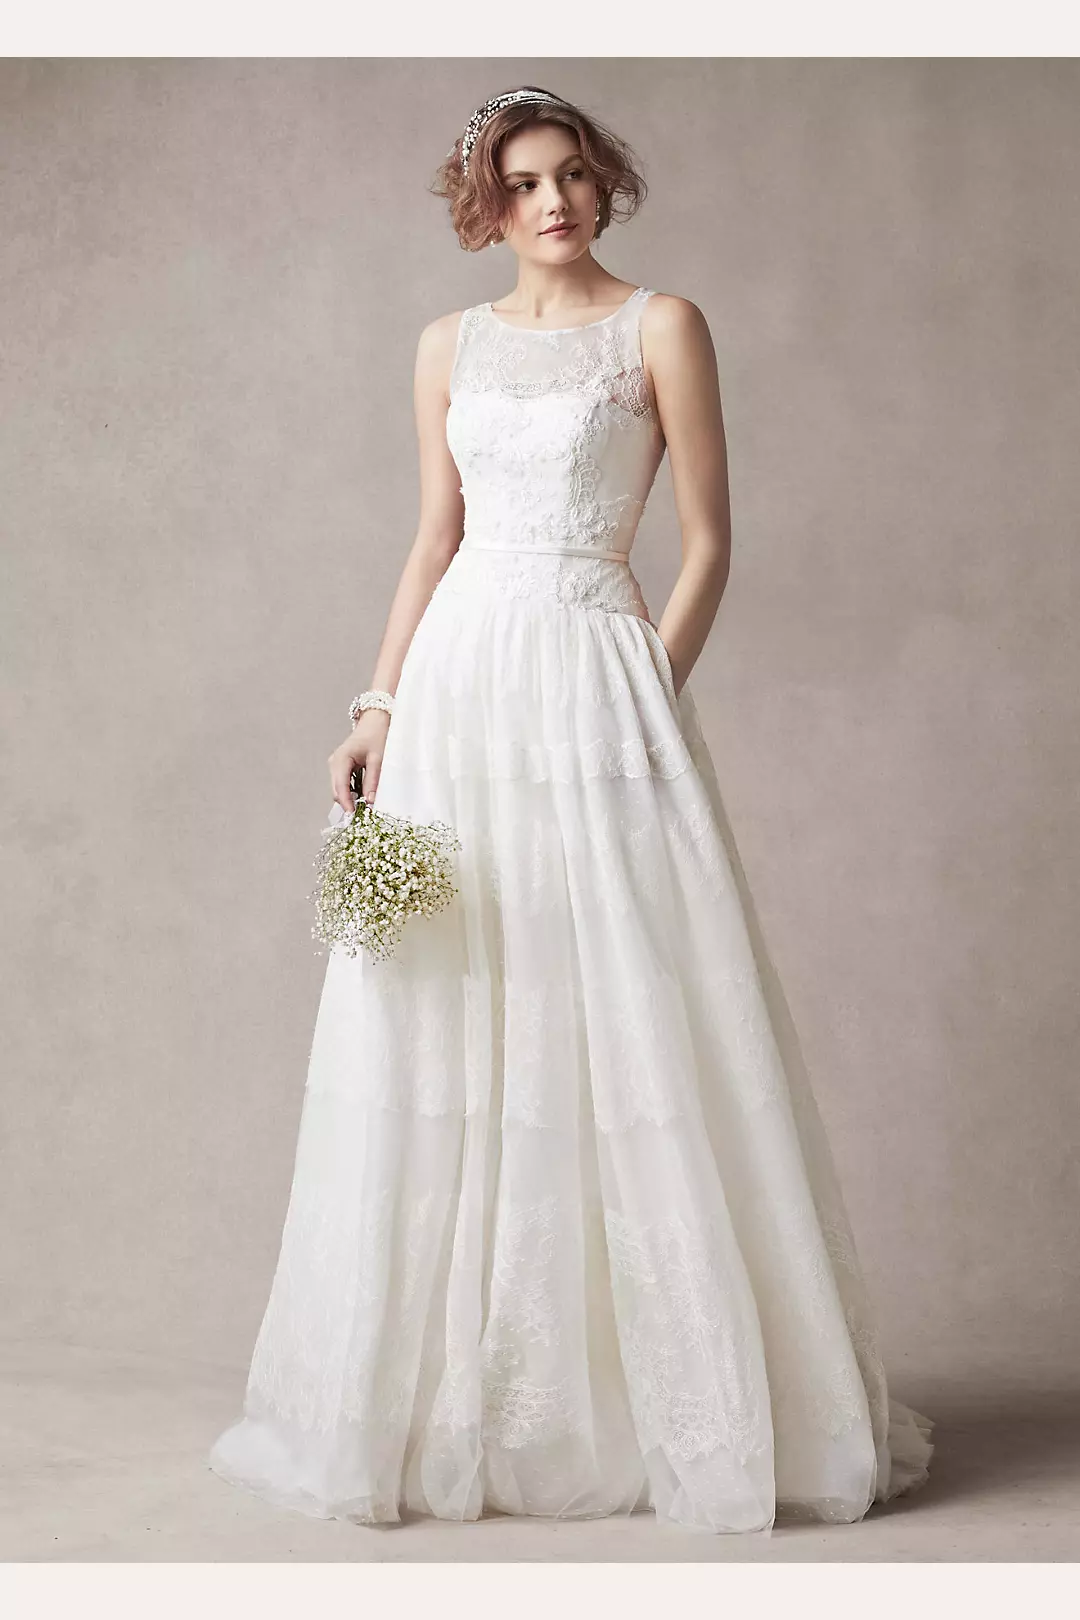 Melissa Sweet Sleeveless Wedding Dress with Tulle Image